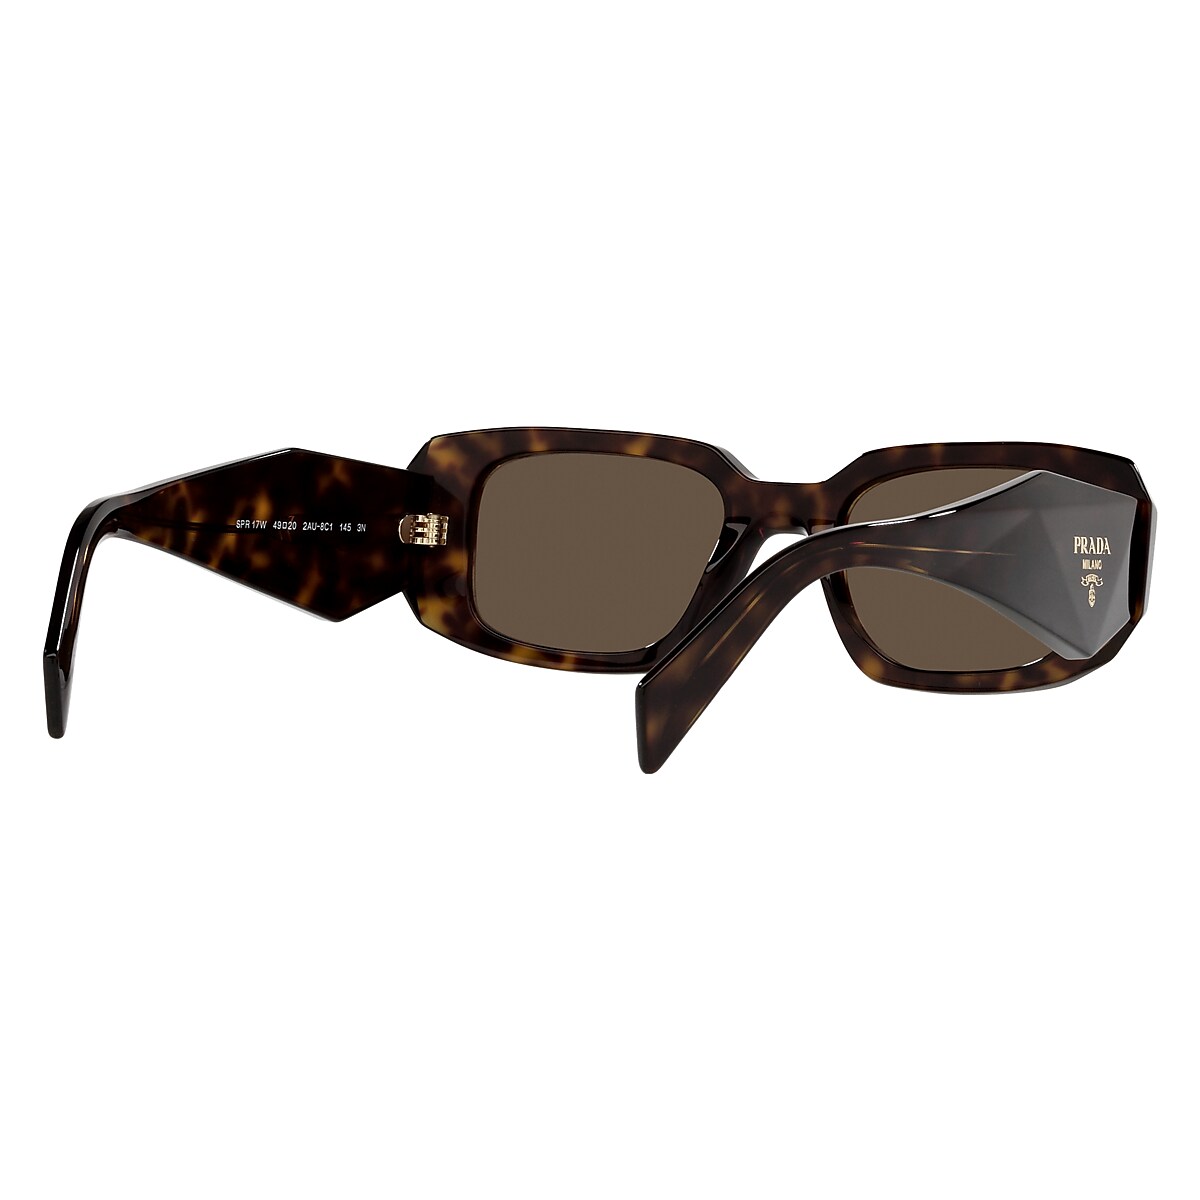 Prada Sunglasses | Glasses.com® | Free Shipping